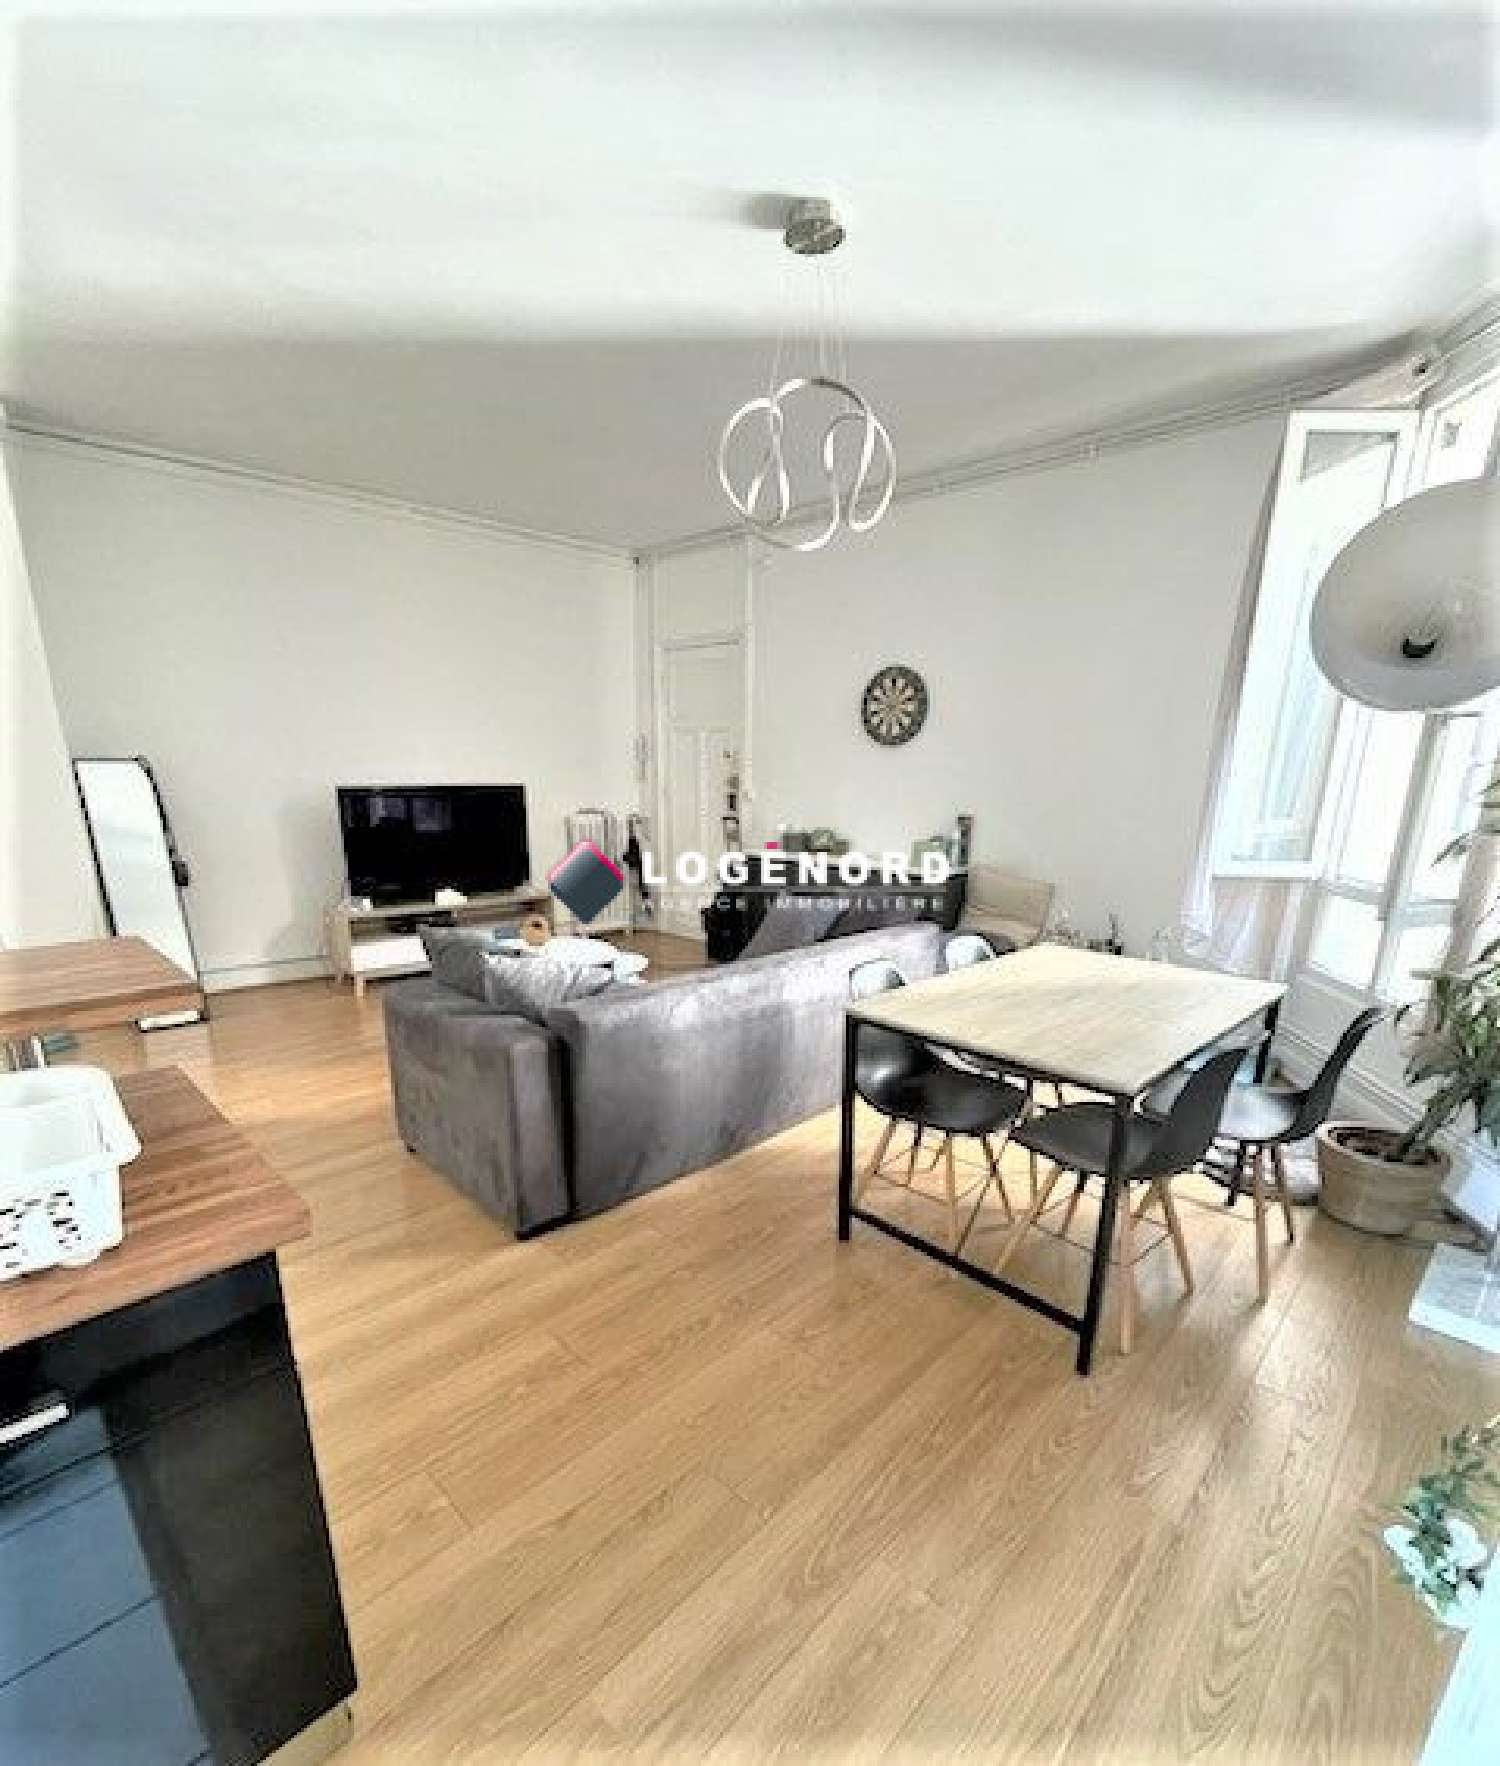  à vendre appartement Lille Nord 2